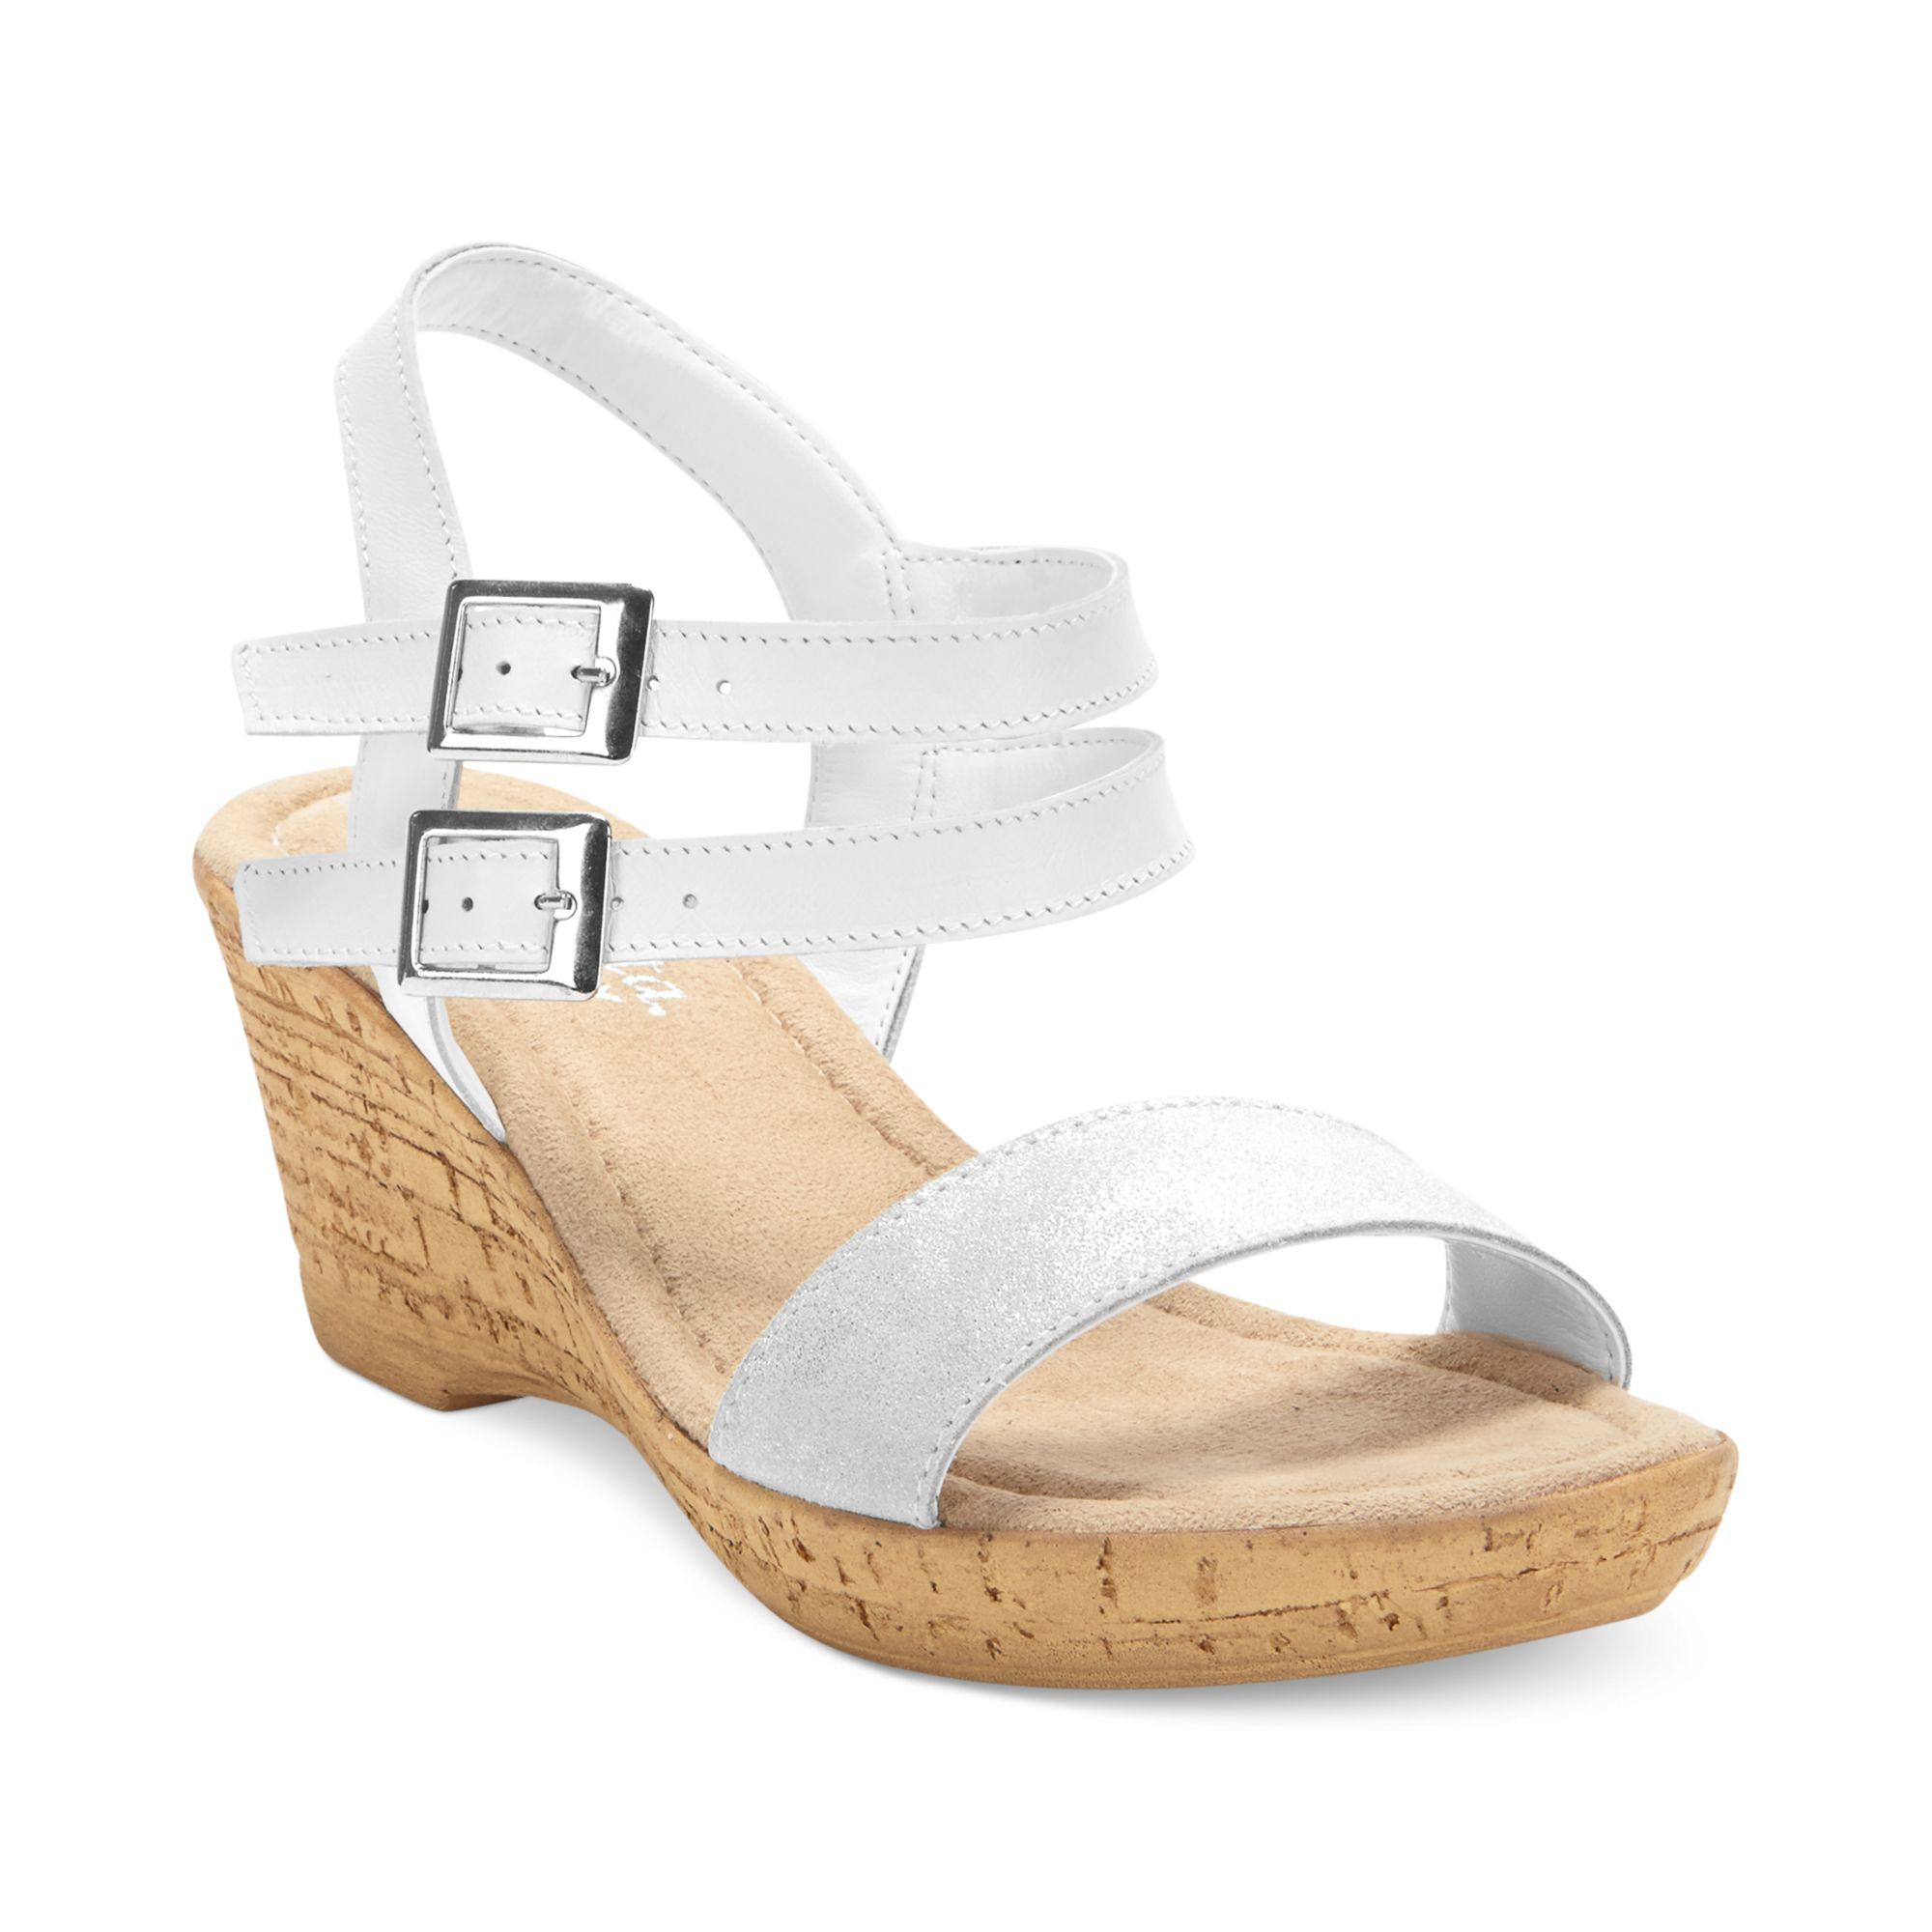 Bella Vita Italian Collection Zucchero Platform Wedge Sandals in White ...